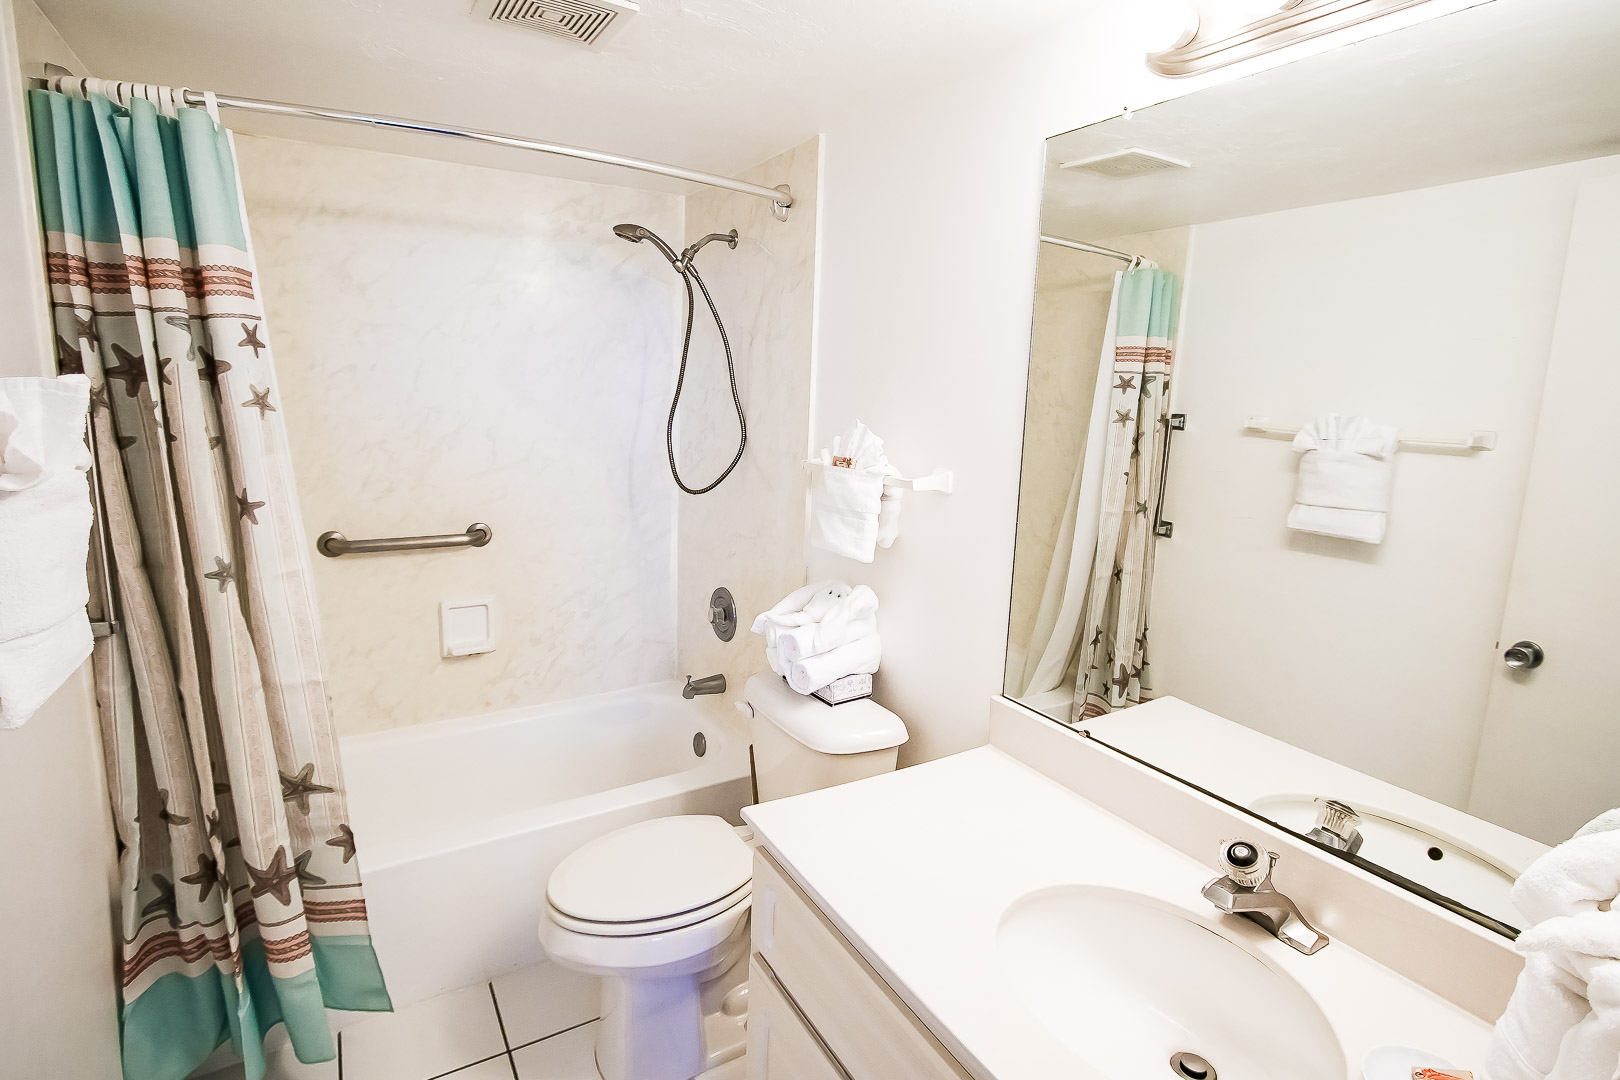 A clean bathroom at VRI's Bonita Resort and Club in Florida.